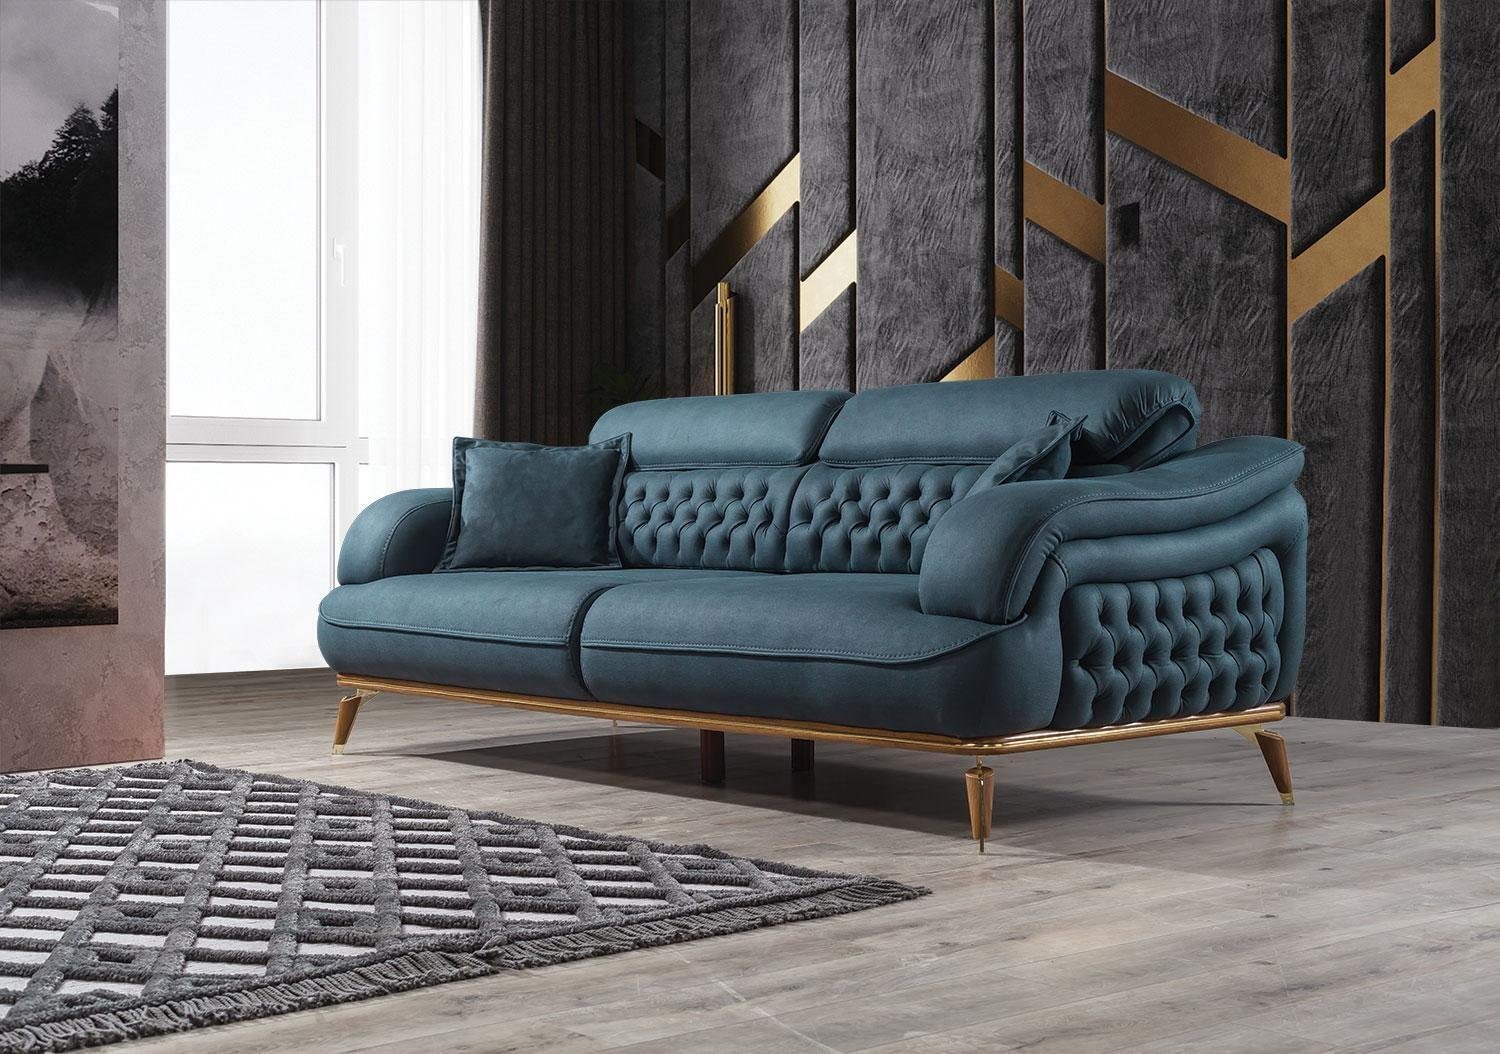 JVmoebel Sofa Wohnzimmer Sofa 3 Sitzer Couch Möbel Holz Blau Polster Möbel Sofa Neu, 1 Teile, Made in Europa